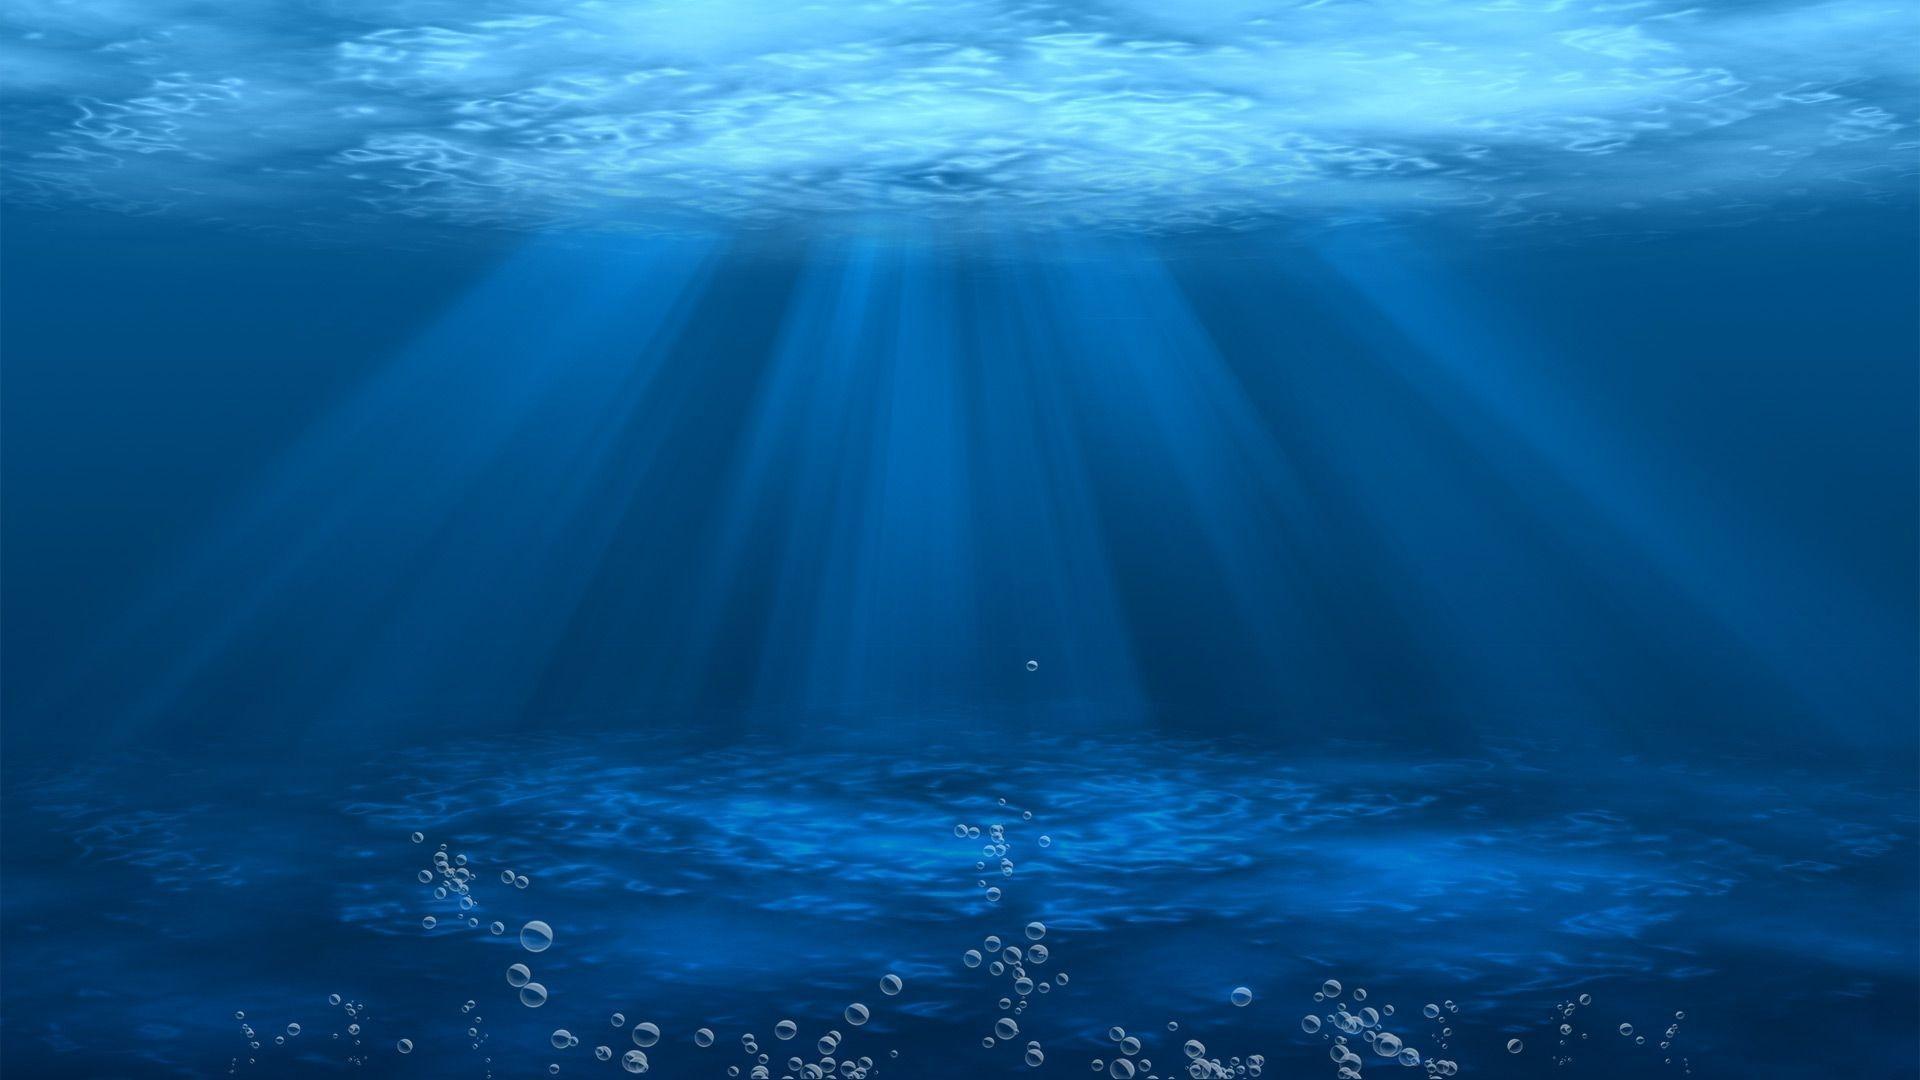 Những hình nền độ phân giải cao về đại dương dưới nước đang chờ đón bạn khám phá. Hãy đưa bản thân vào dòng nước và tận hưởng những khoảnh khắc tuyệt vời với những hình nền máy tính đẹp nhất về biển và đại dương.